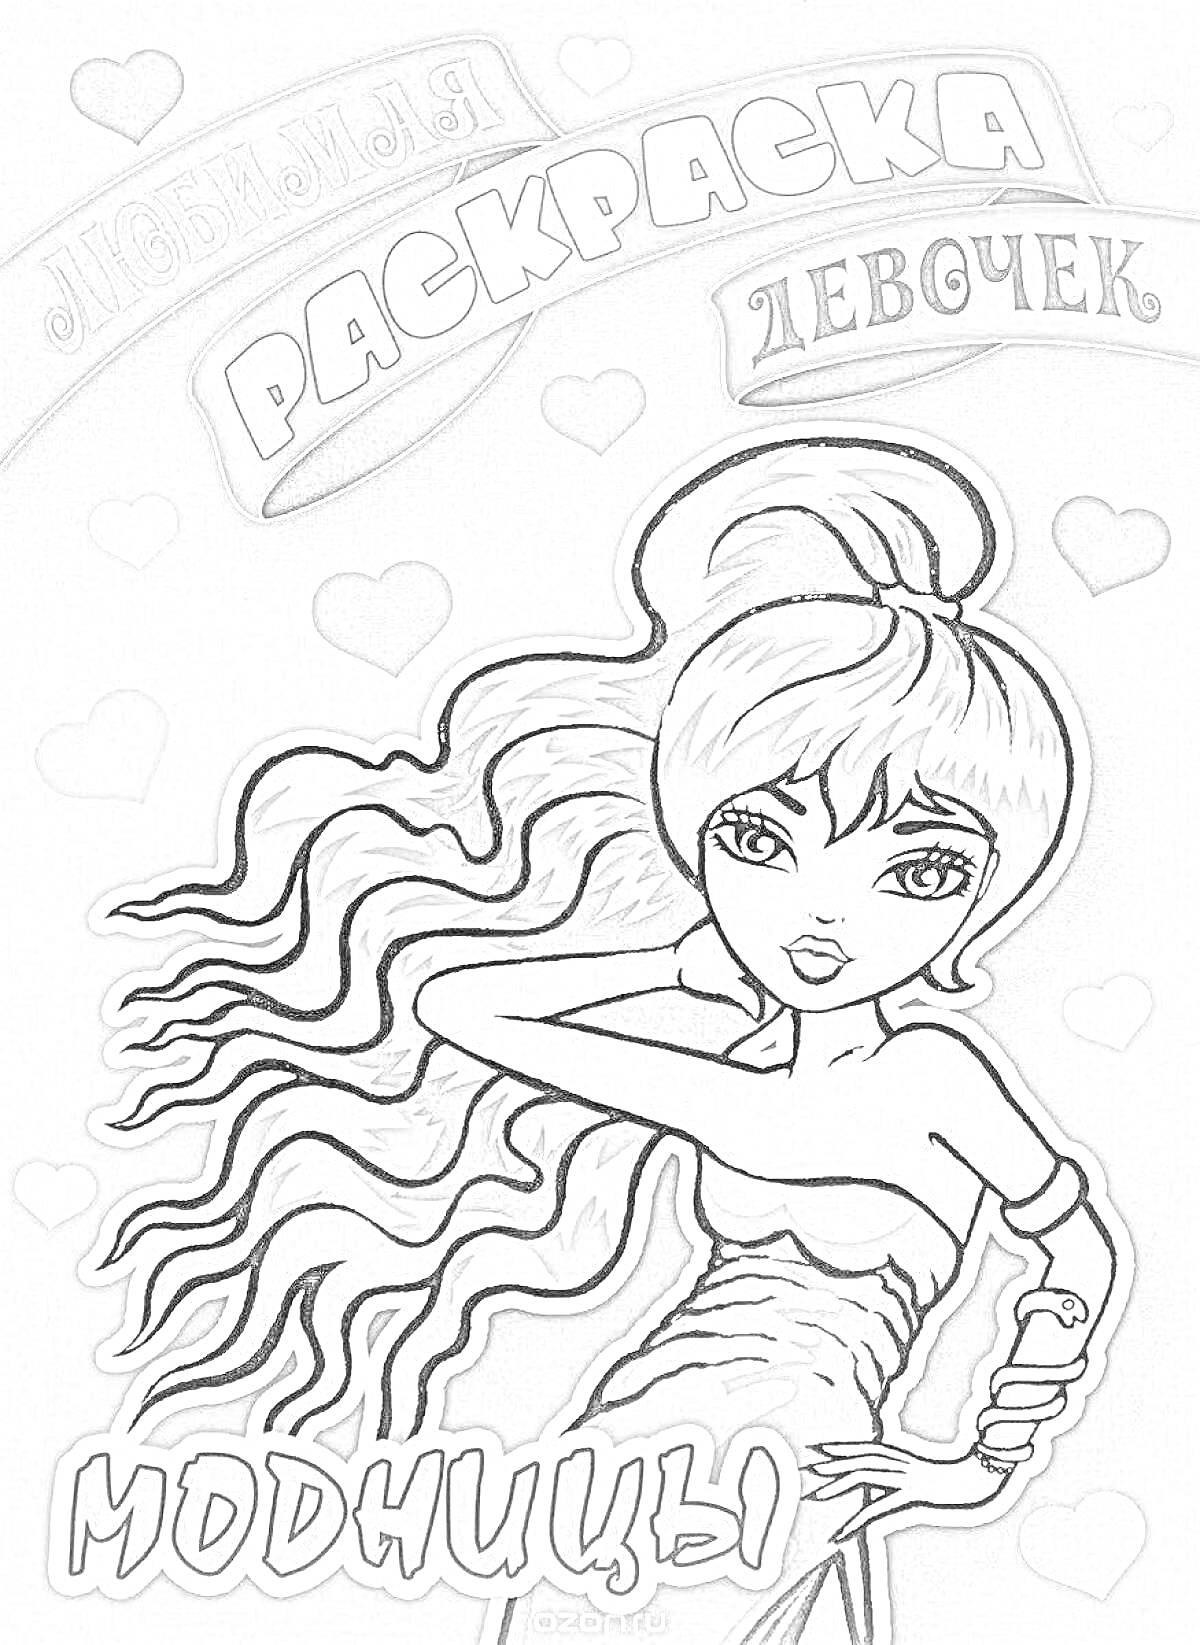 Раскраска Раскраска для девочек модницы, изображение куклы с длинными волнистыми волосами, держащейся за свои волосы, фон с сердечками.